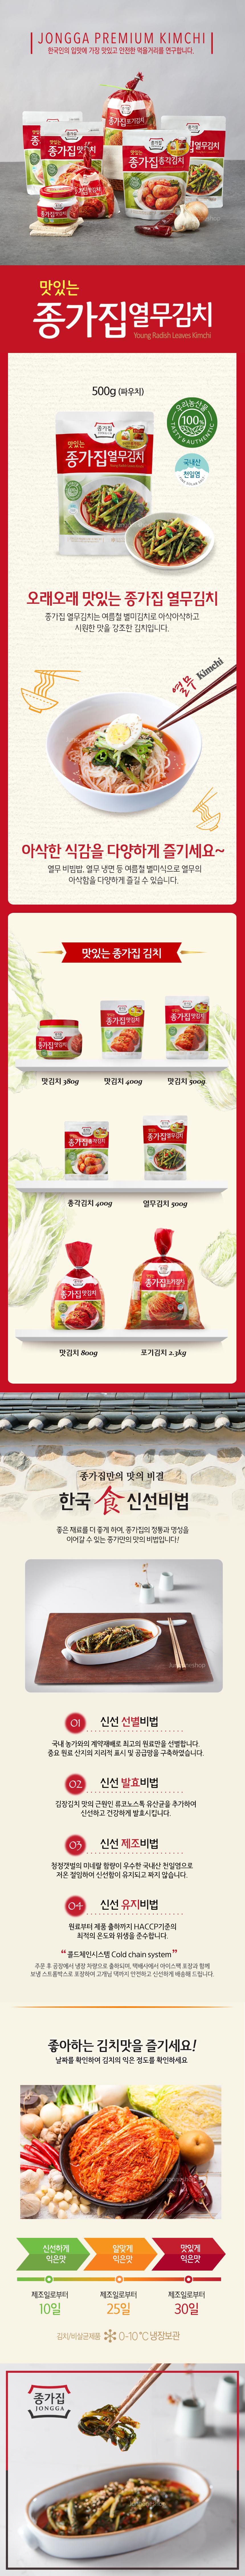 韓國食品-[종가집] 열무김치 500g